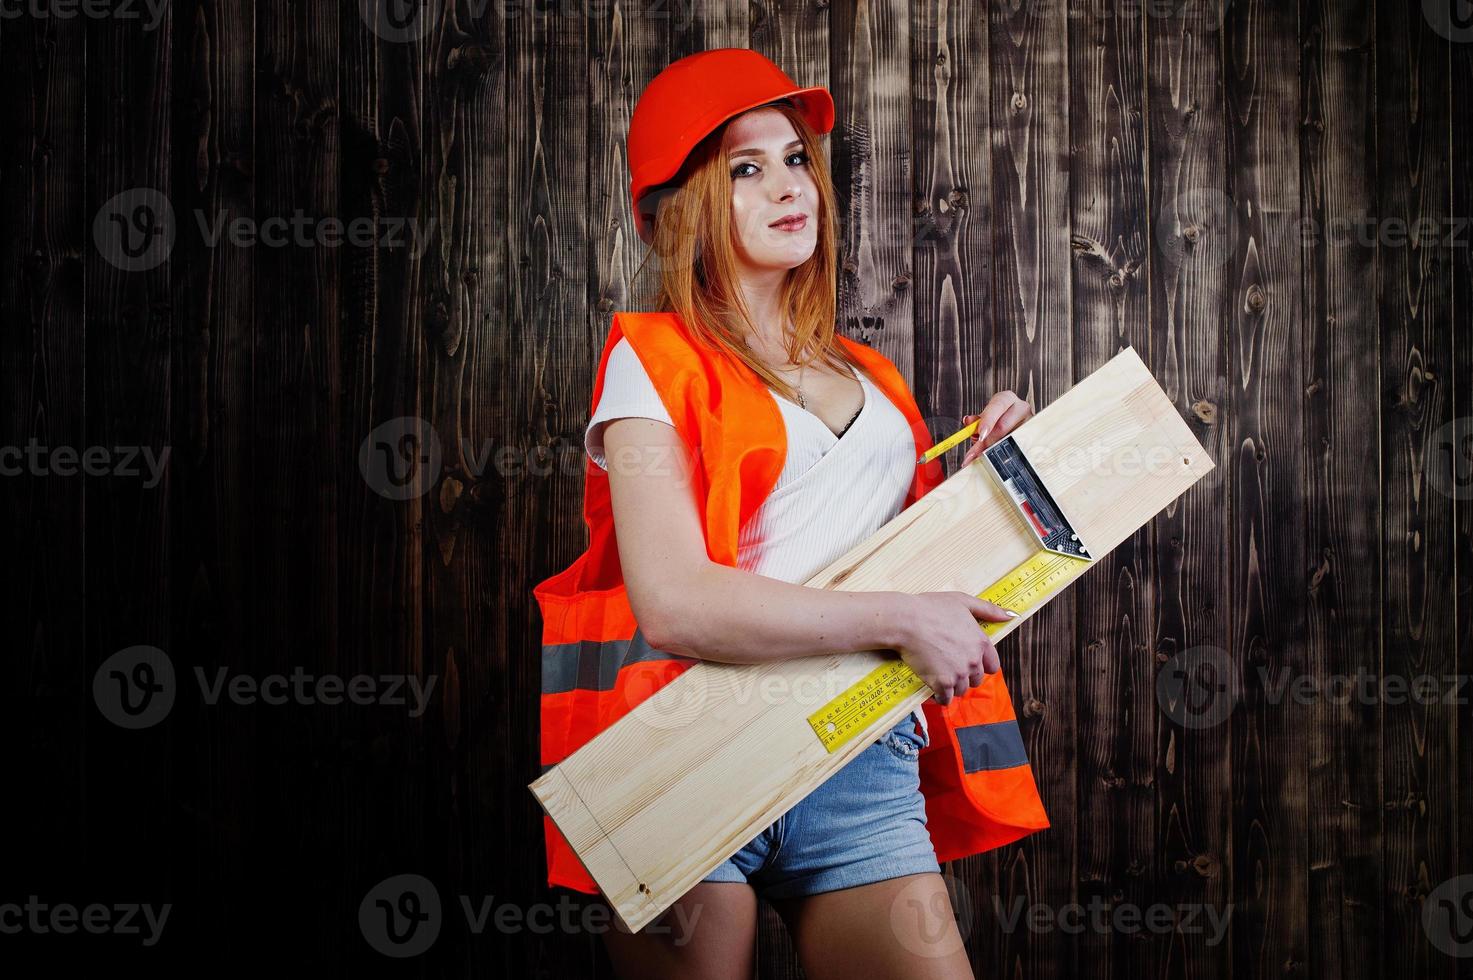 ingenjör kvinna i orange skydda hjälm och bygga jacka mot trä bakgrund håller styrelse och linjal. foto